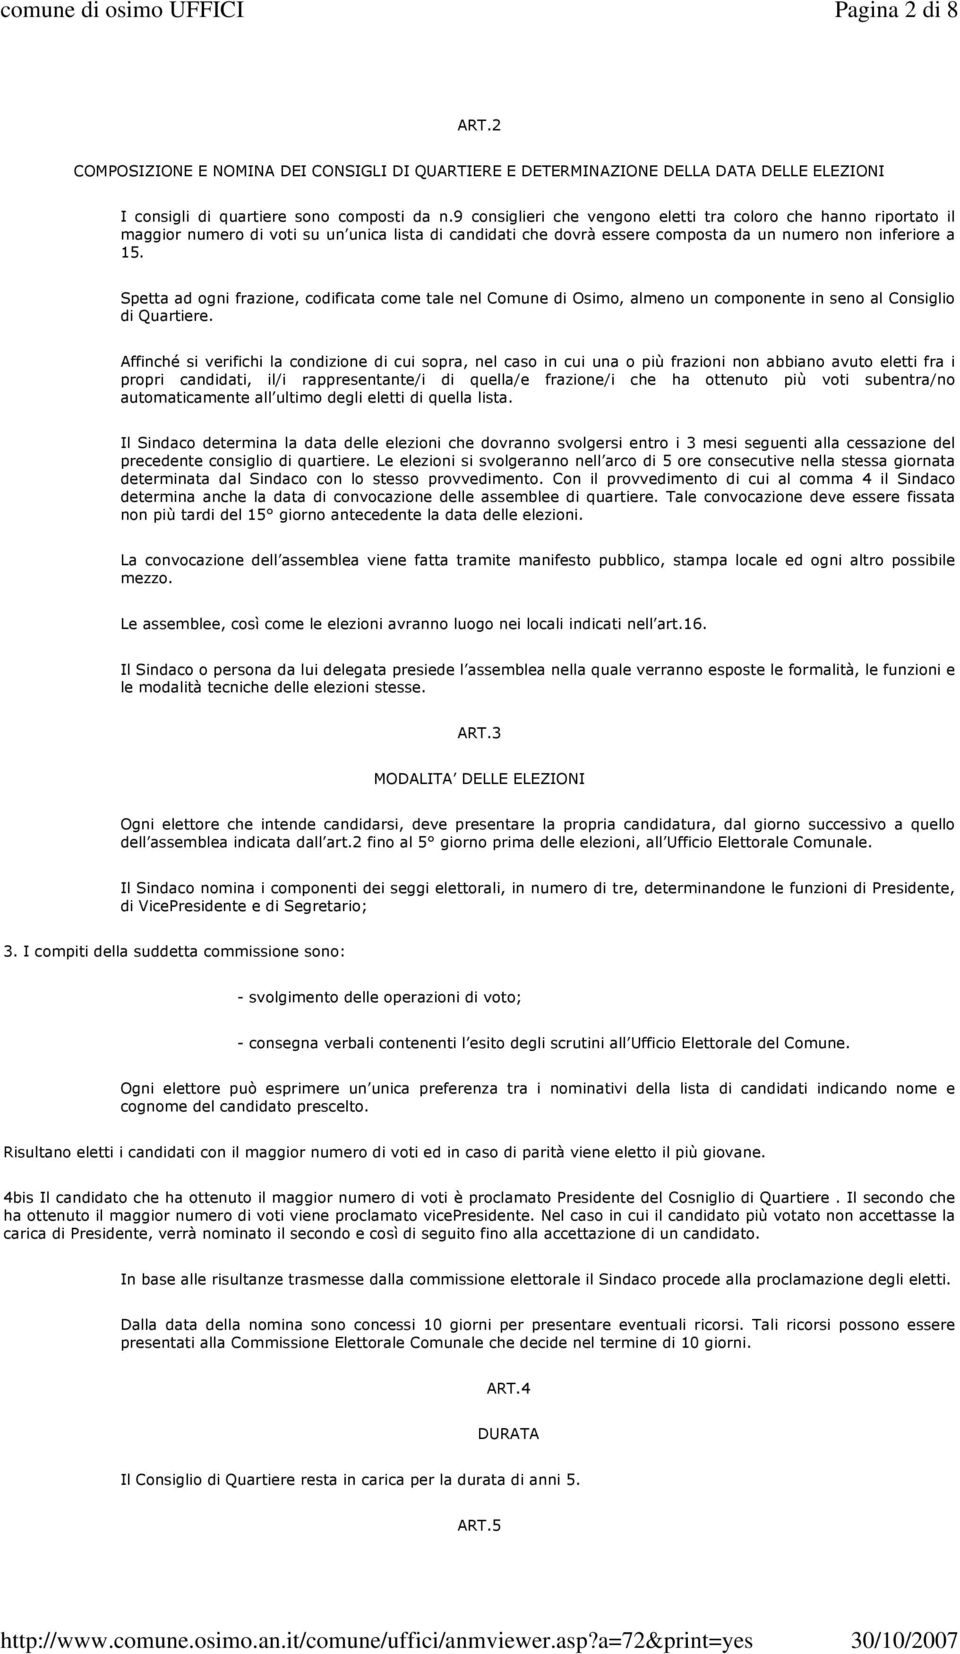 Spetta ad ogni frazione, codificata come tale nel Comune di Osimo, almeno un componente in seno al Consiglio di Quartiere.